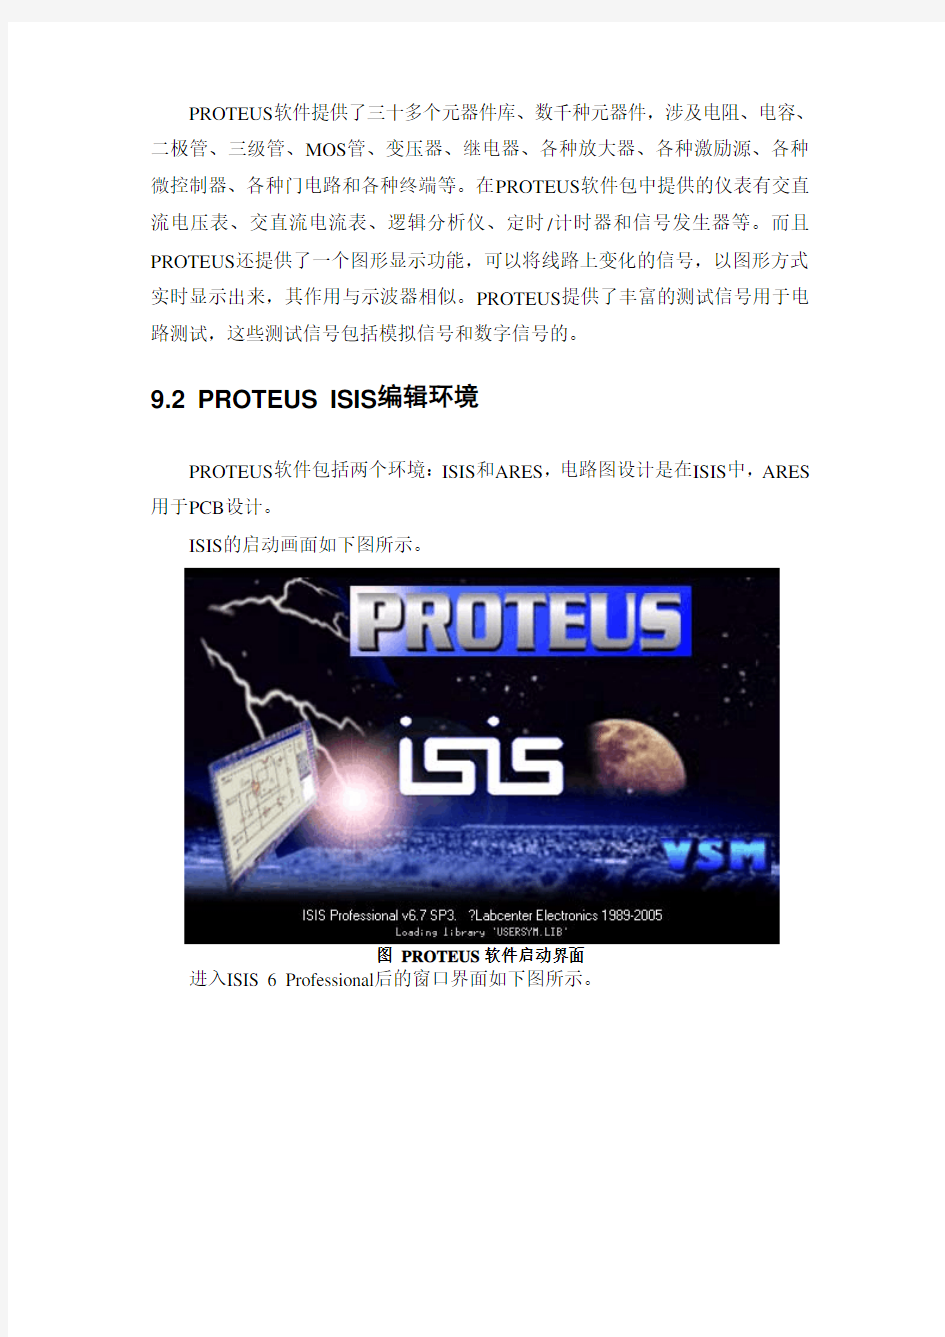 Proteus仿真软件使用说明